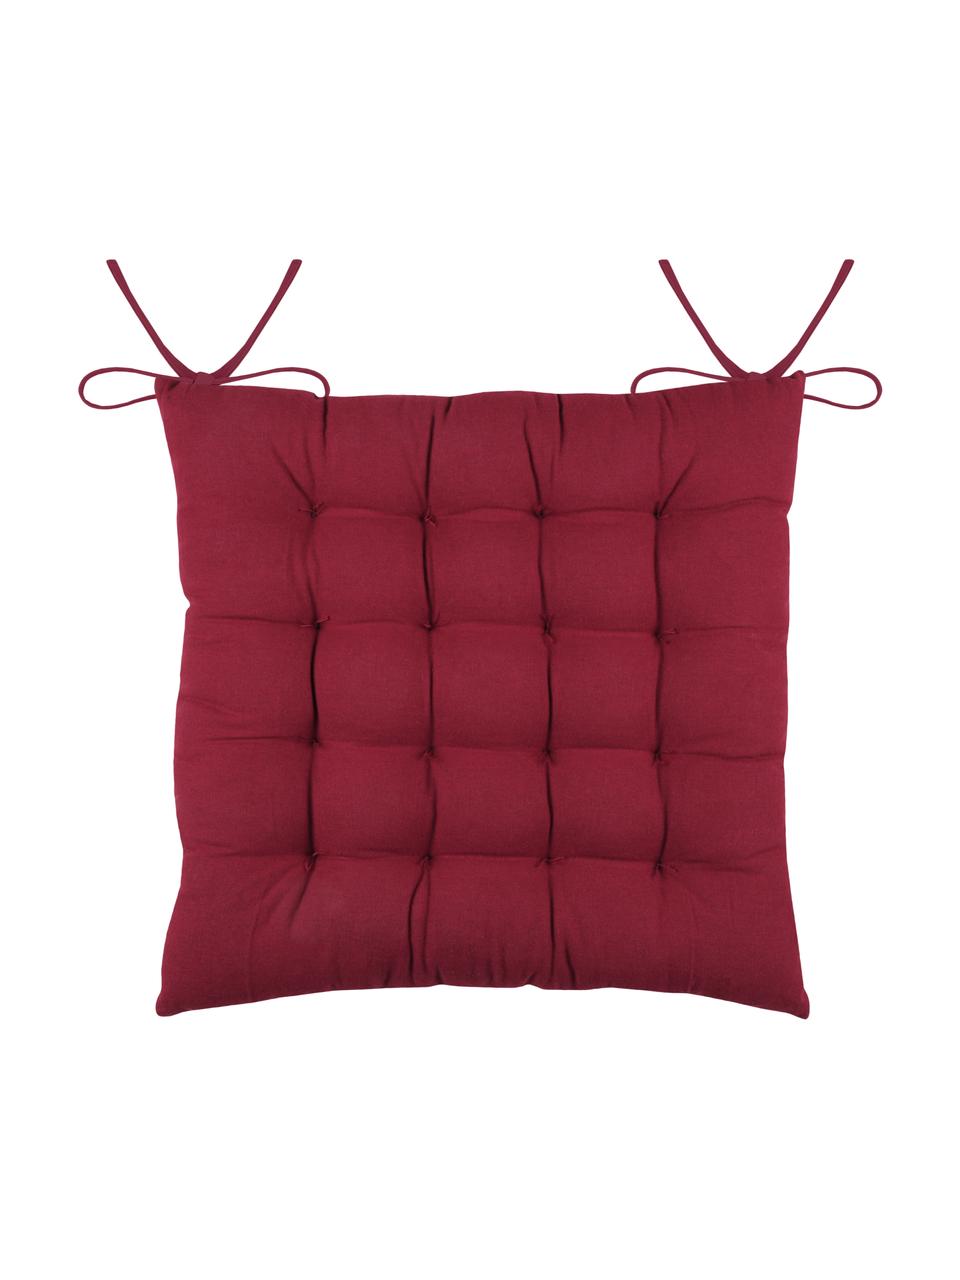 Dwustronna poduszka siedziska na krzesło Galette, 100% bawełna, Czerwony, biały, S 40 x D 40 cm